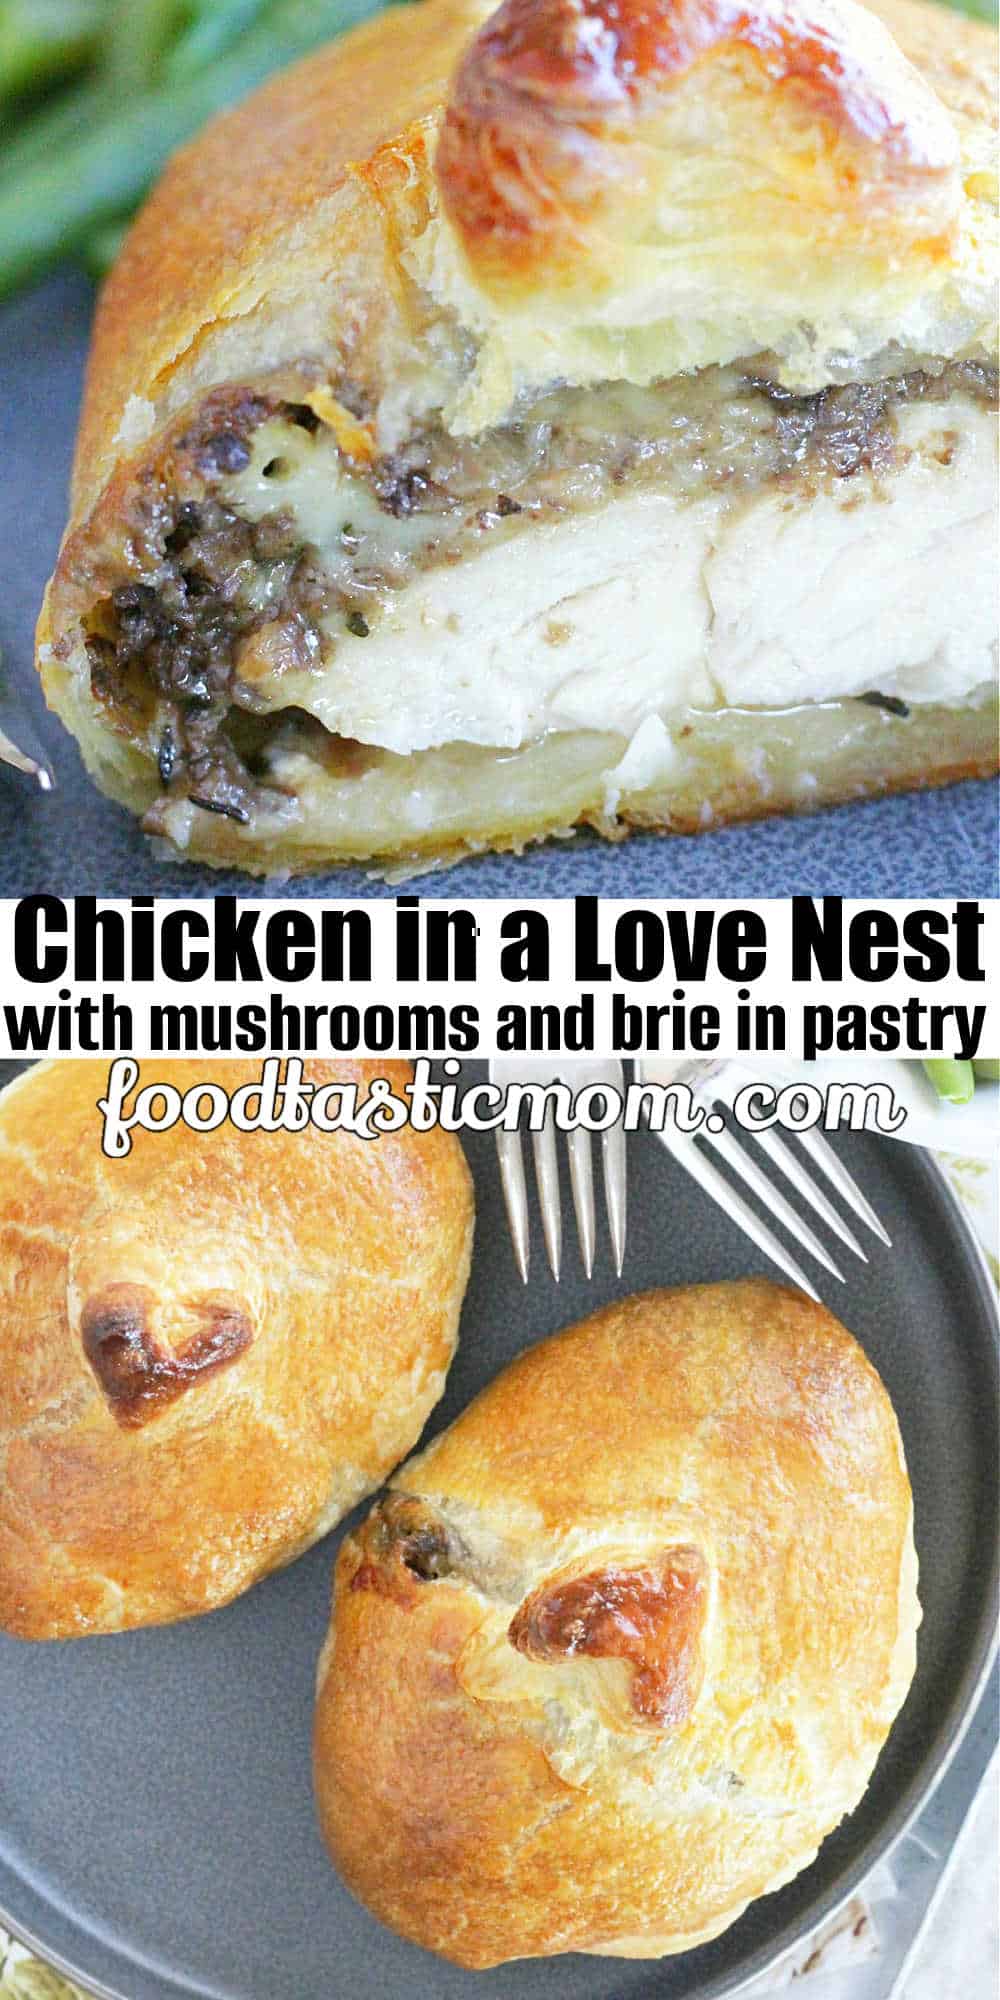 Chicken in a Love Nest | Foodtastic Mom #chickenrecipes #datenightdinnerrecipes #valentinesday via @foodtasticmom